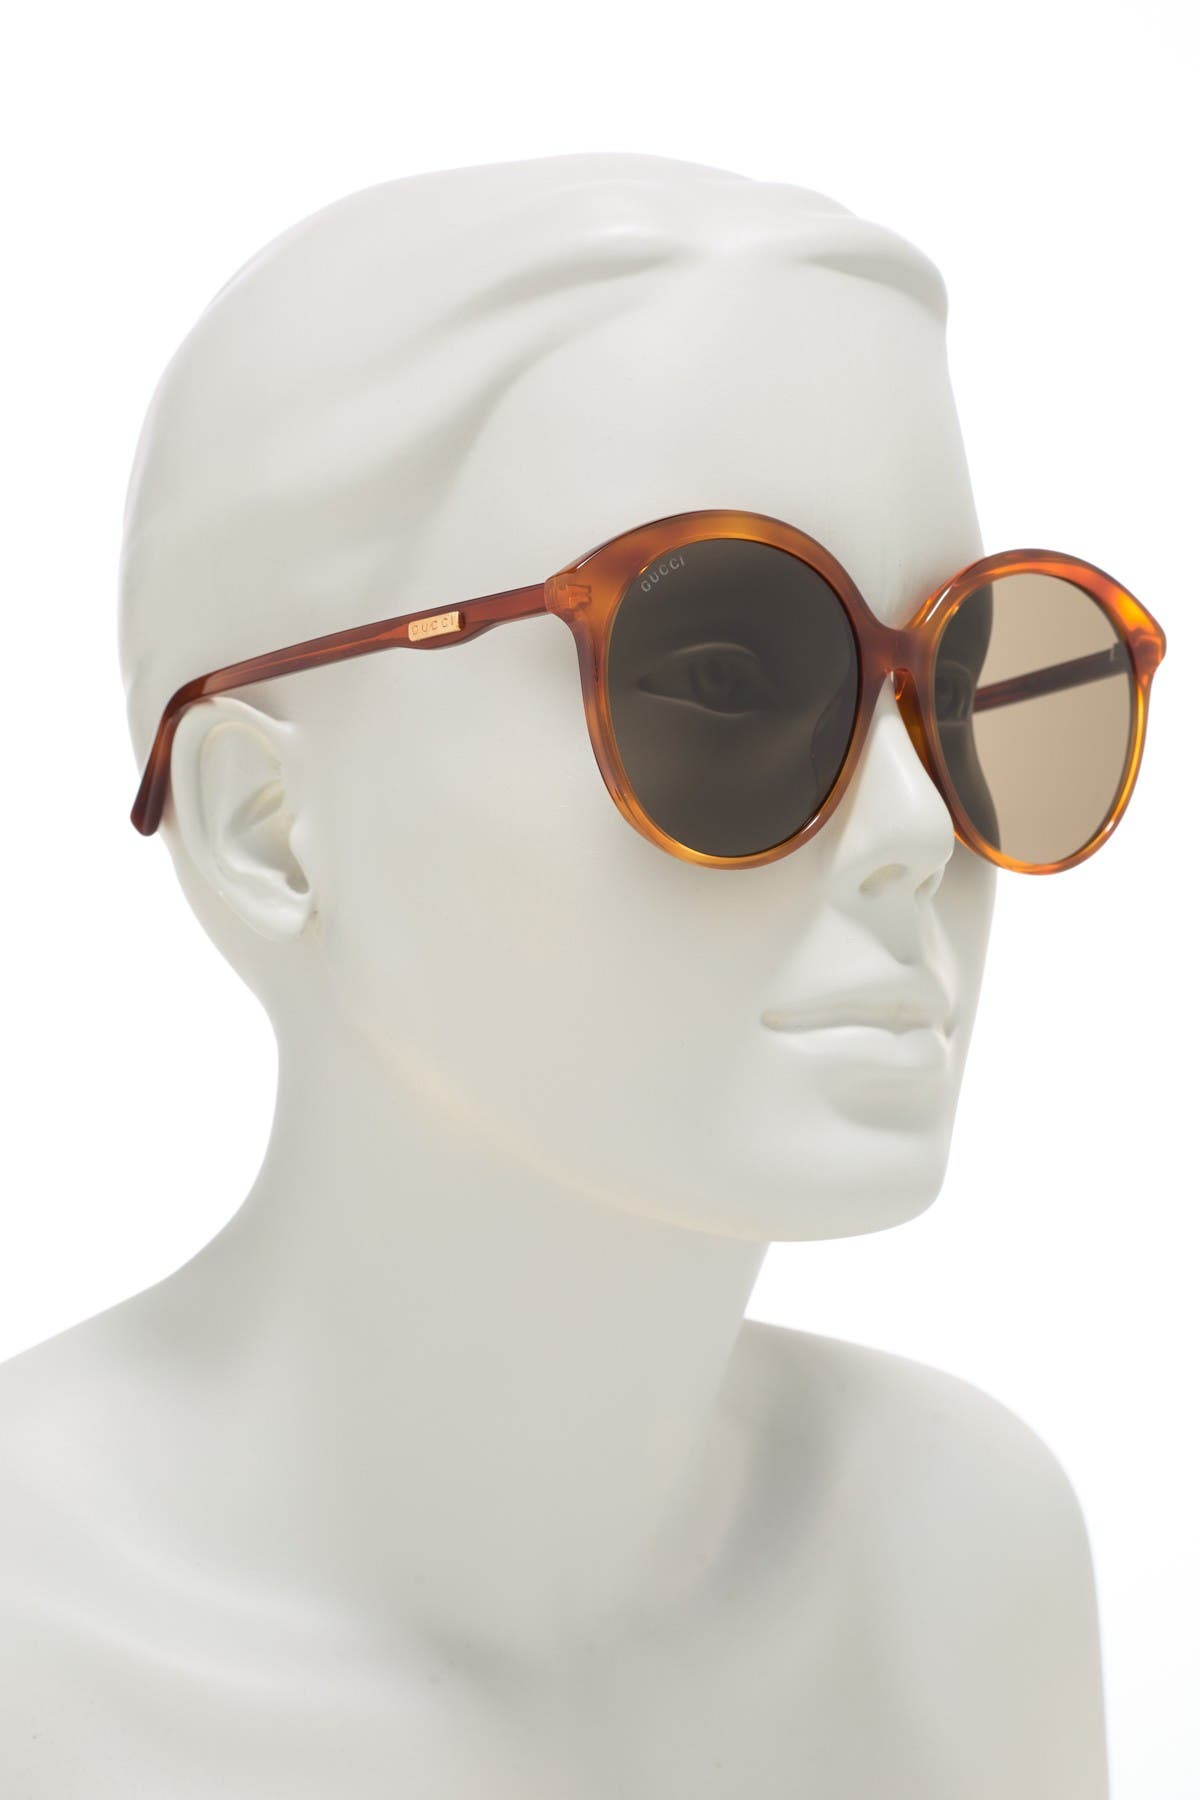 gucci 59mm round sunglasses